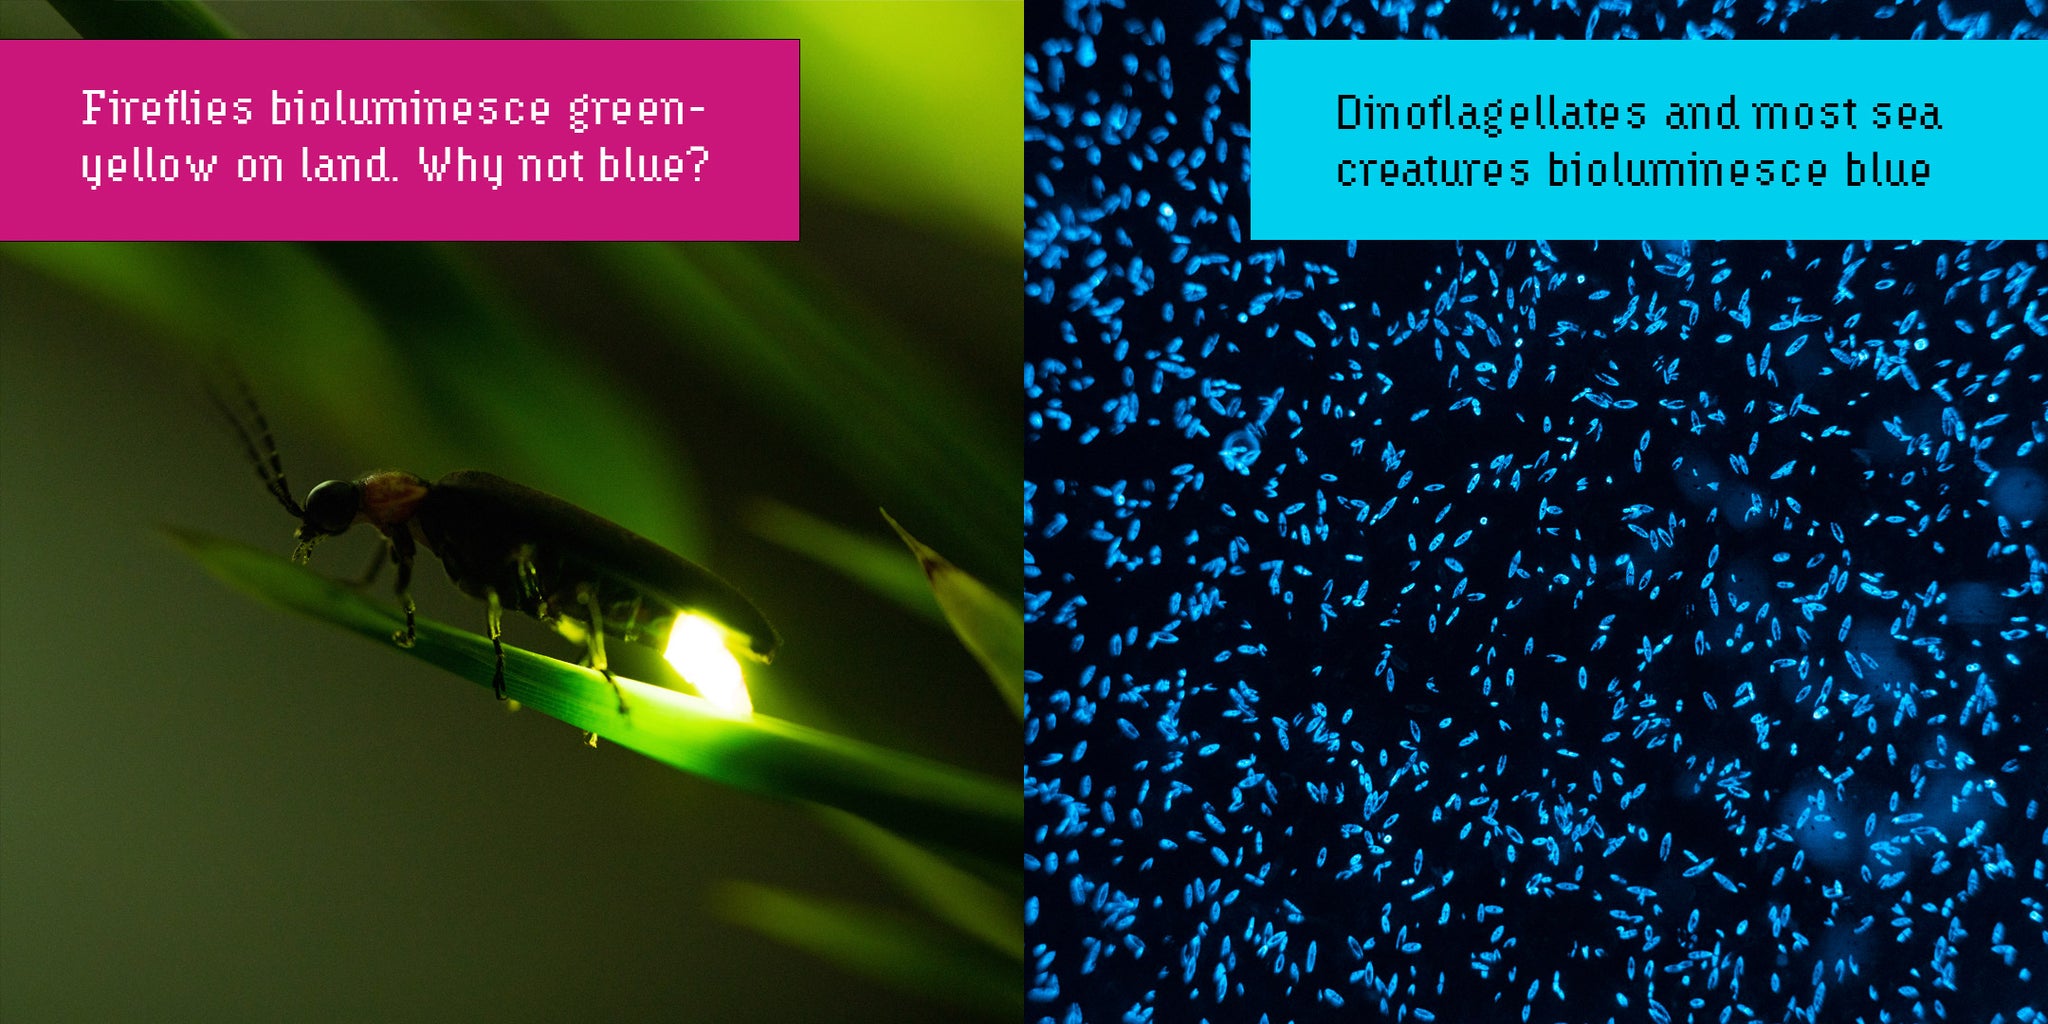 Firefly bioluminescence versus dinoflagellate bioluminescence